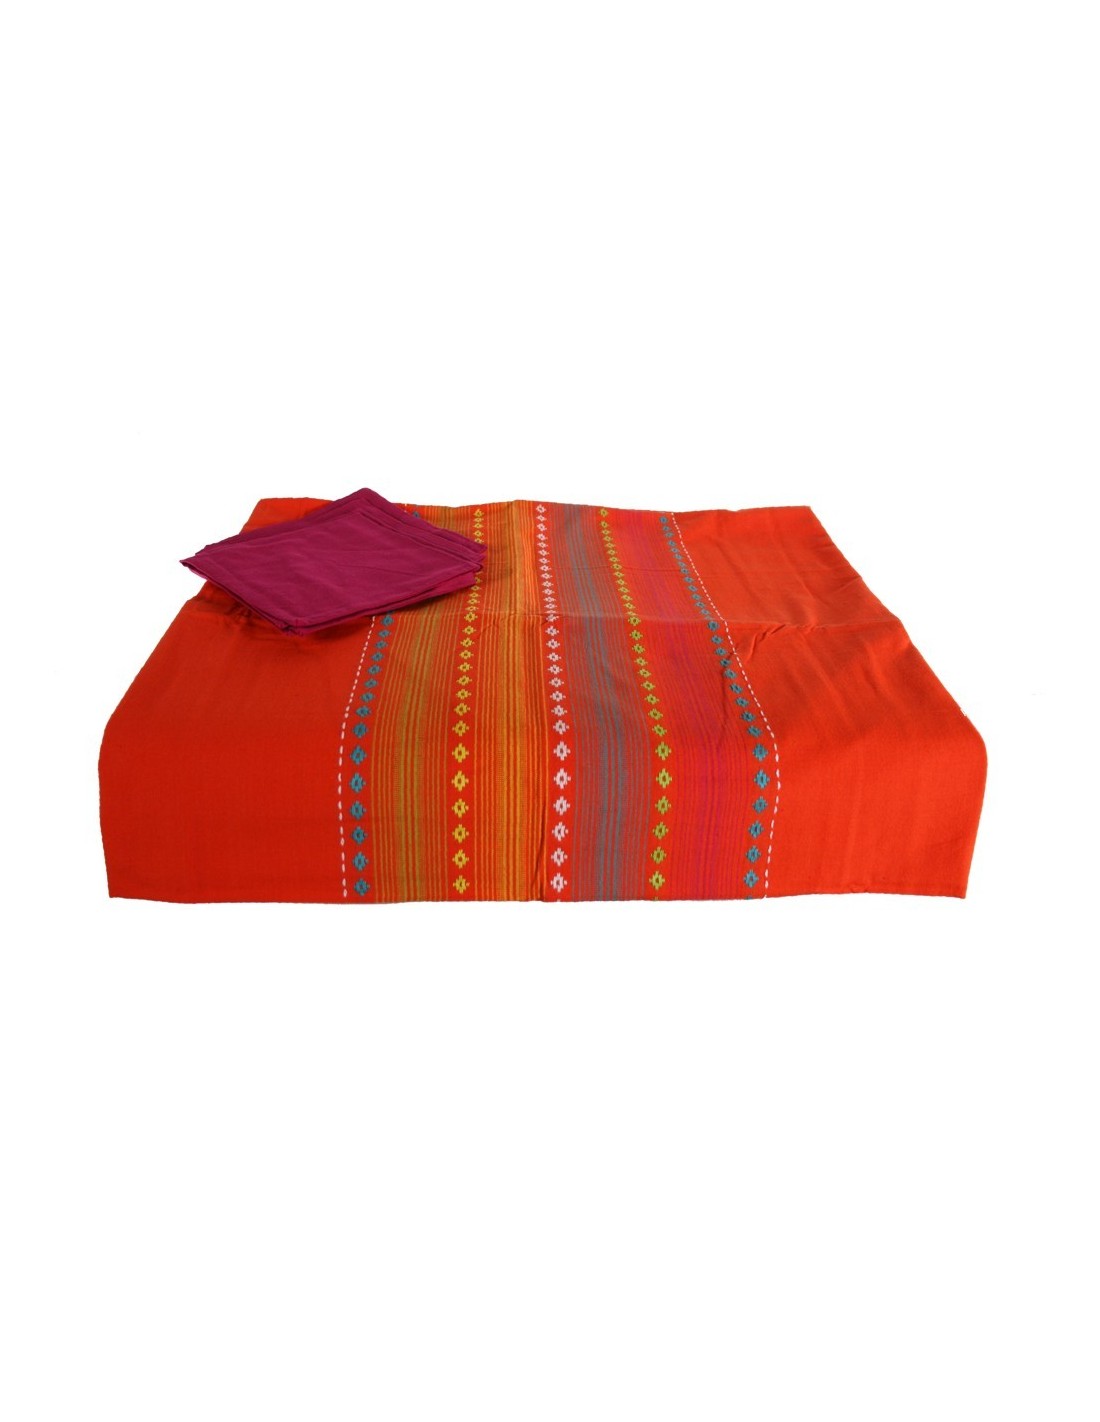 Estovalles color taronja amb 4 tovallons a joc per vestir la teva taula